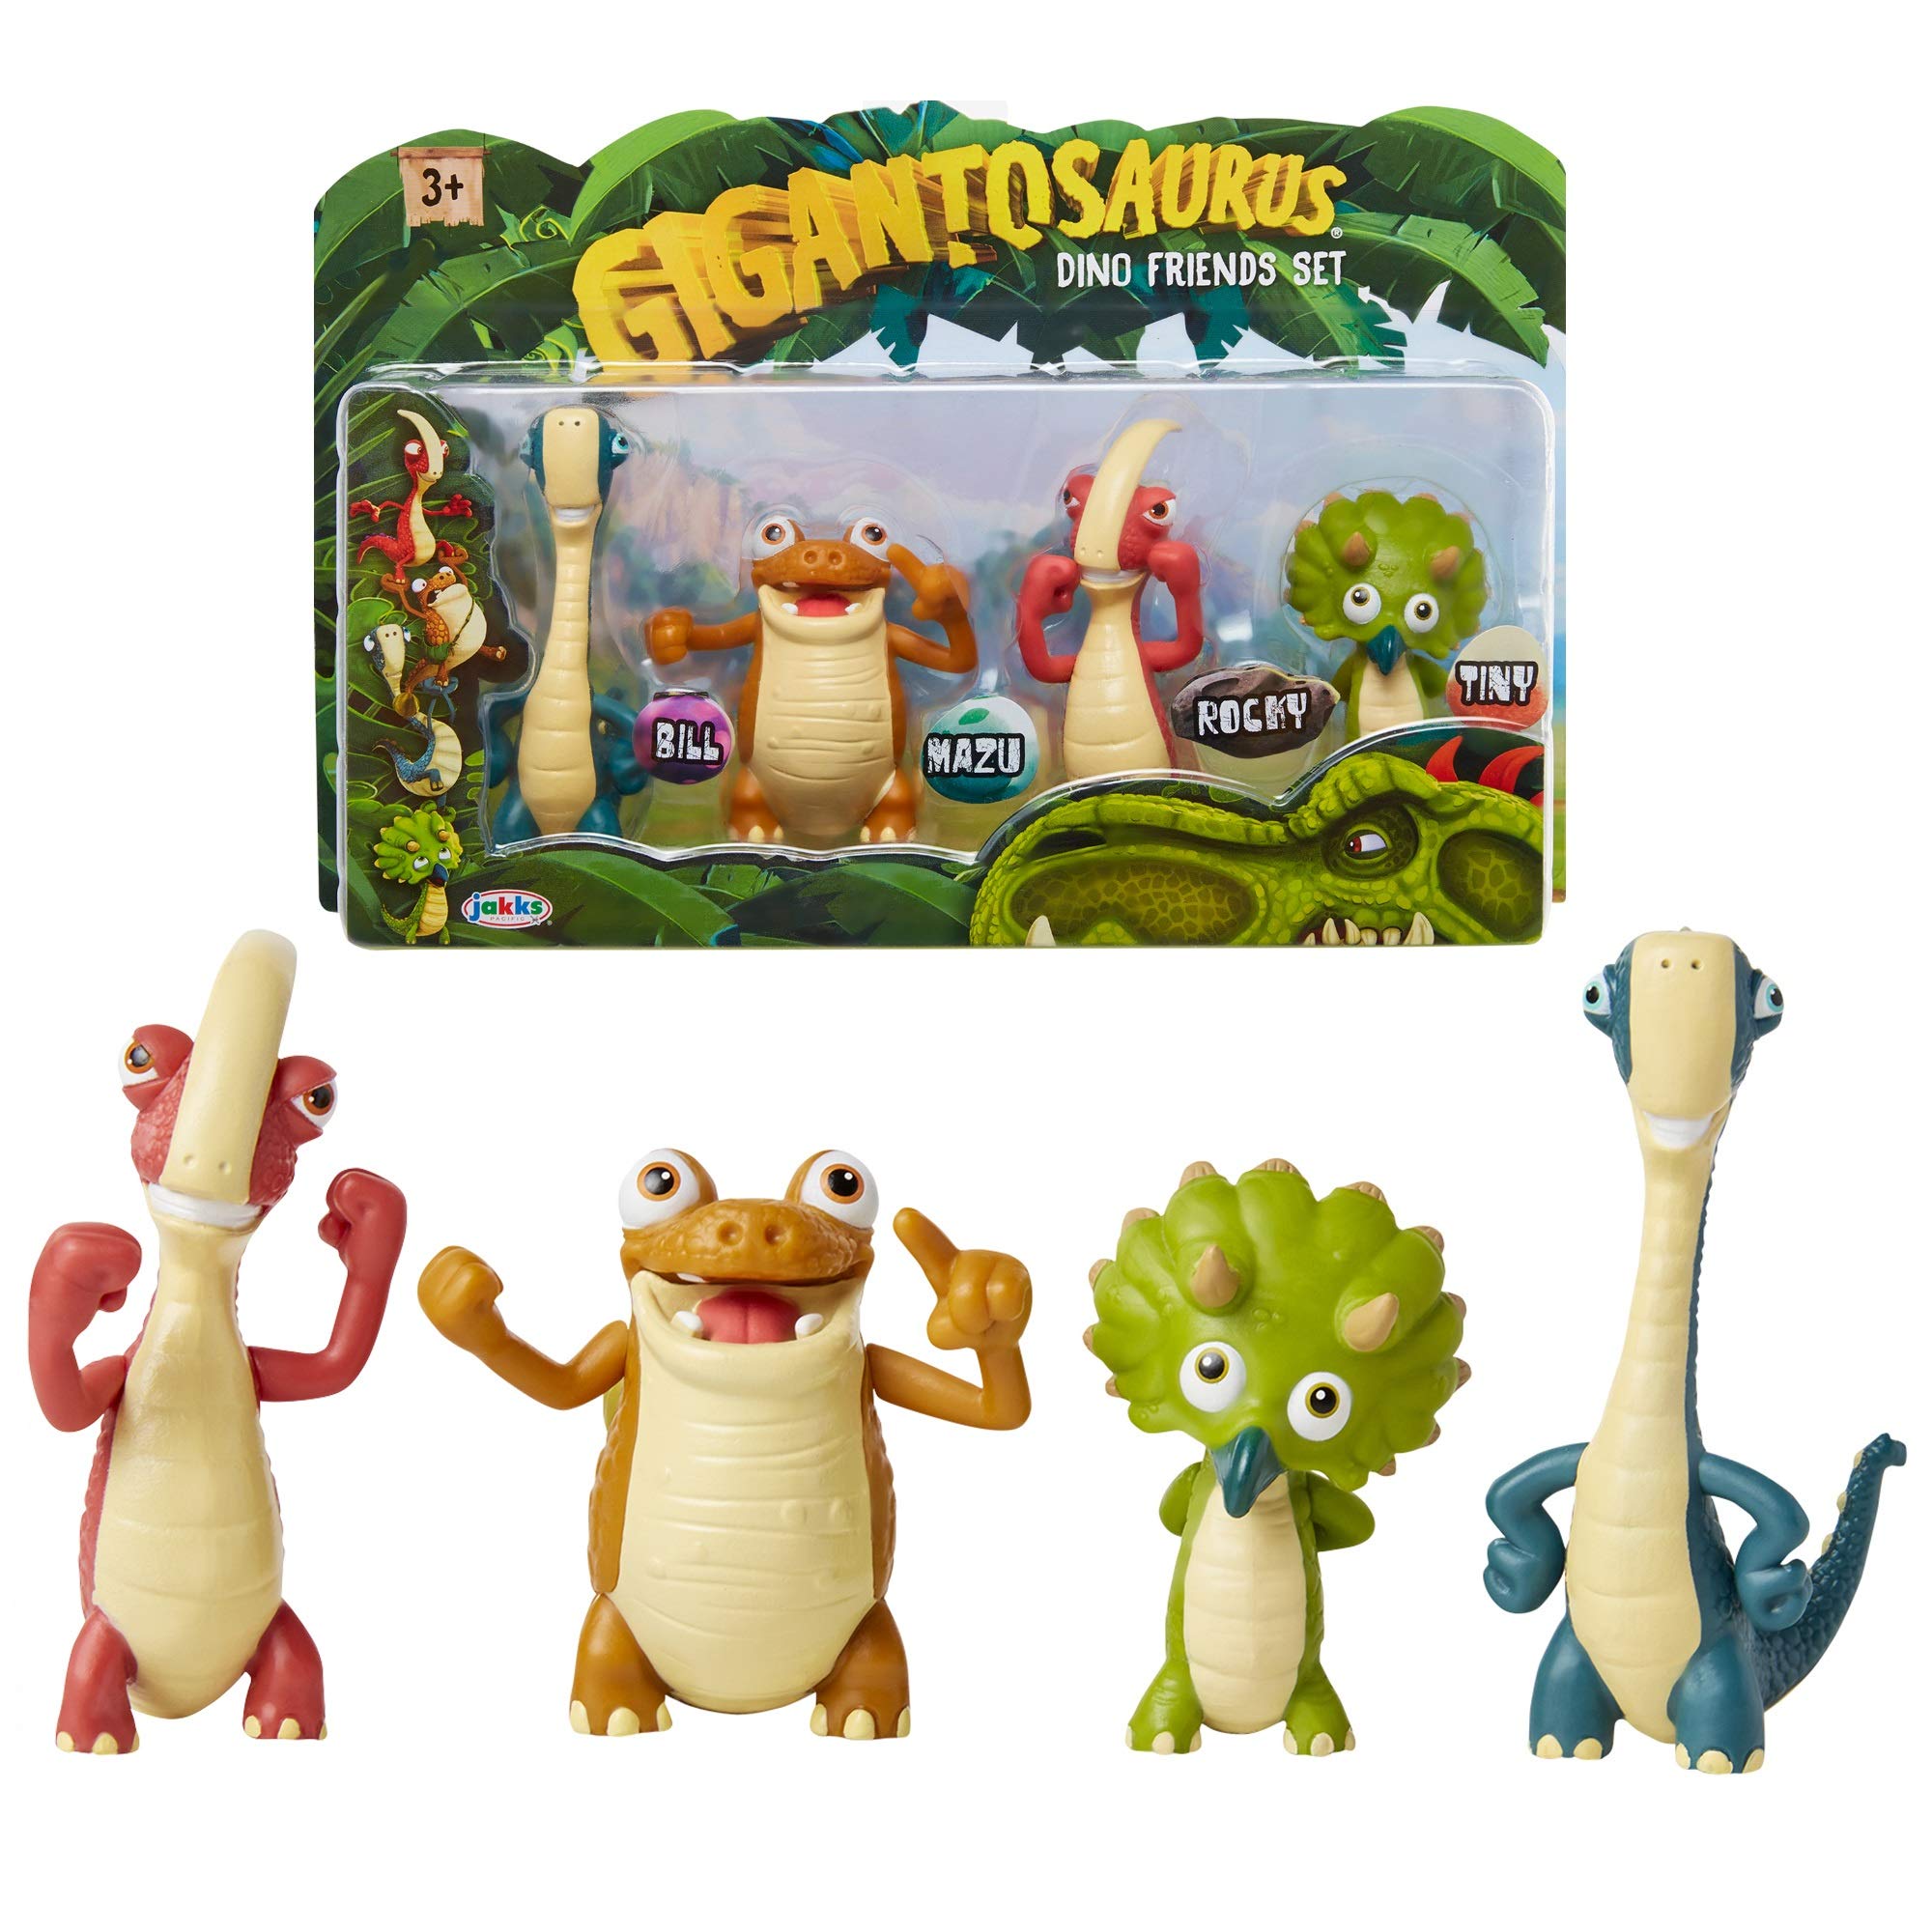 Gigantosaurus キャラクターフィギュア 4個セット 関節式アーム&テール付き 恐竜のおもちゃスタンド 高さ約3~3.5インチ 恐竜おもちゃ 男の子&女の子 3歳以上